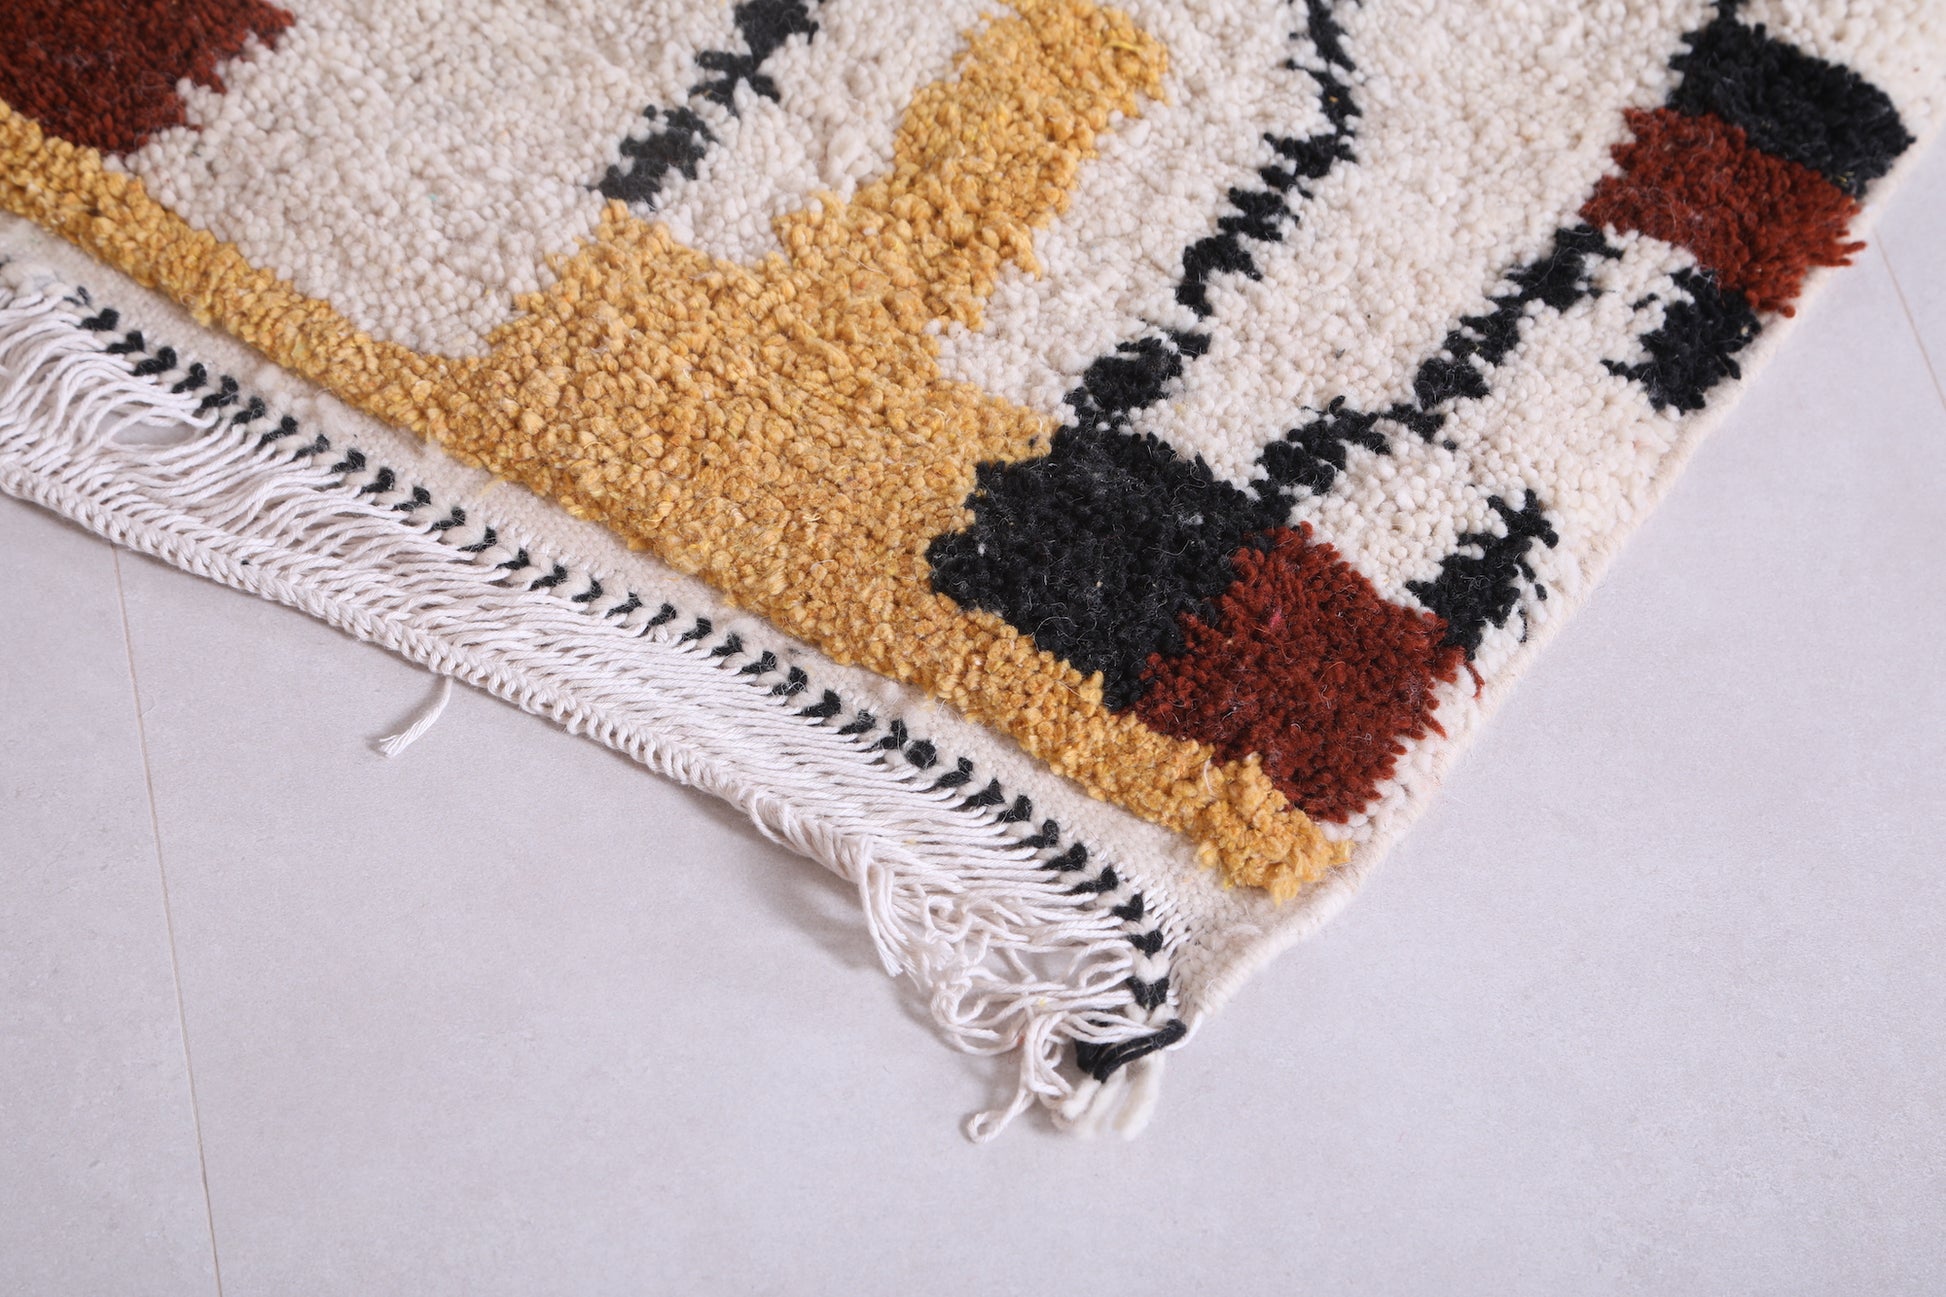 Handmade Moroccan rug - Custom Wool azilal rug